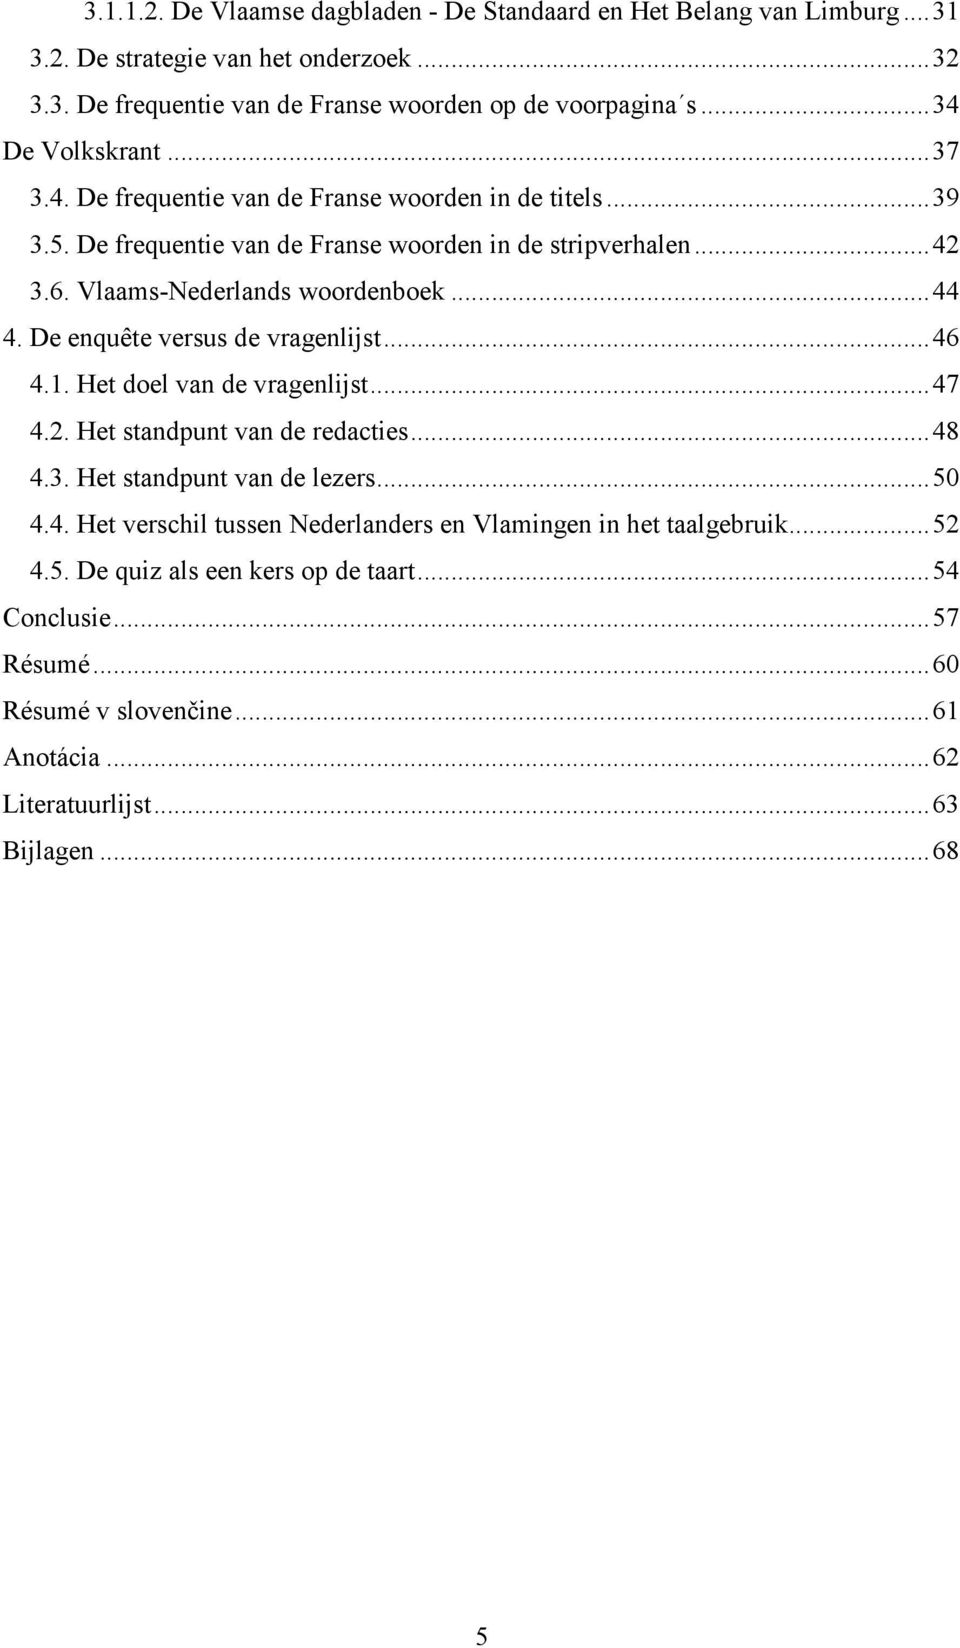 .. 44 4. De enquête versus de vragenlijst... 46 4.1. Het doel van de vragenlijst... 47 4.2. Het standpunt van de redacties... 48 4.3. Het standpunt van de lezers... 50 4.4. Het verschil tussen Nederlanders en Vlamingen in het taalgebruik.